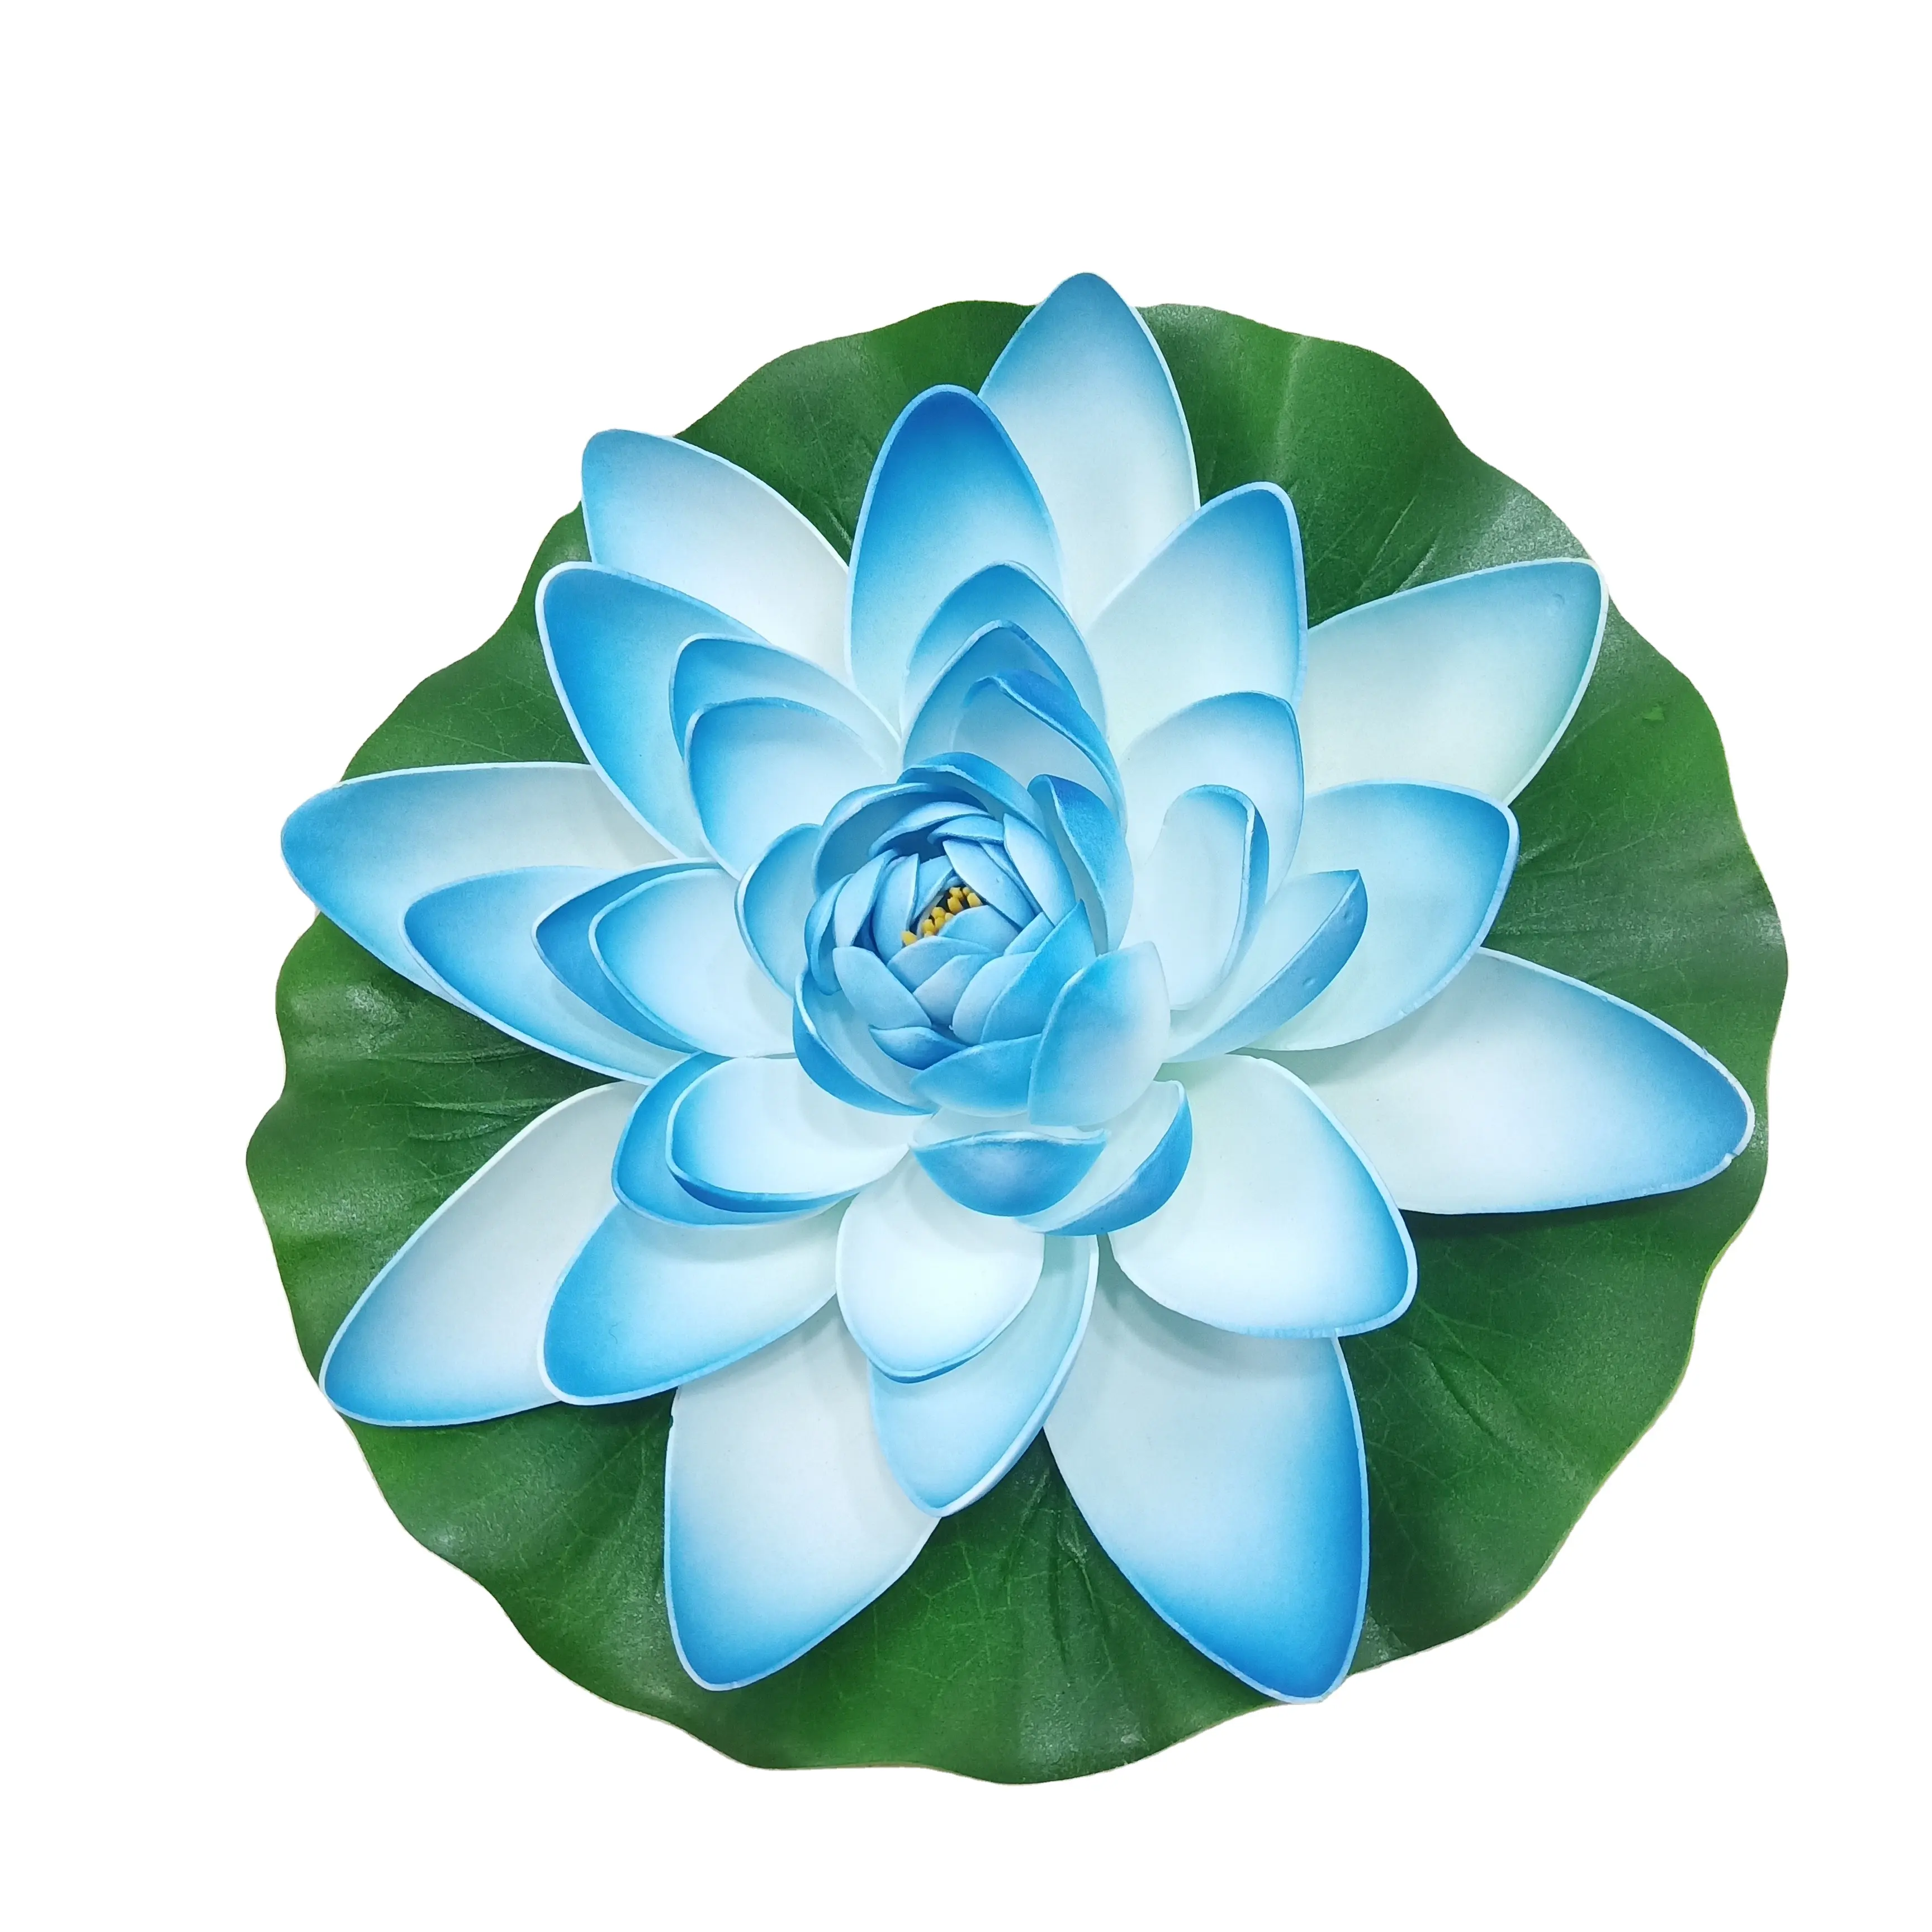 Cheap plastic simulation decorative artificial lotus flower